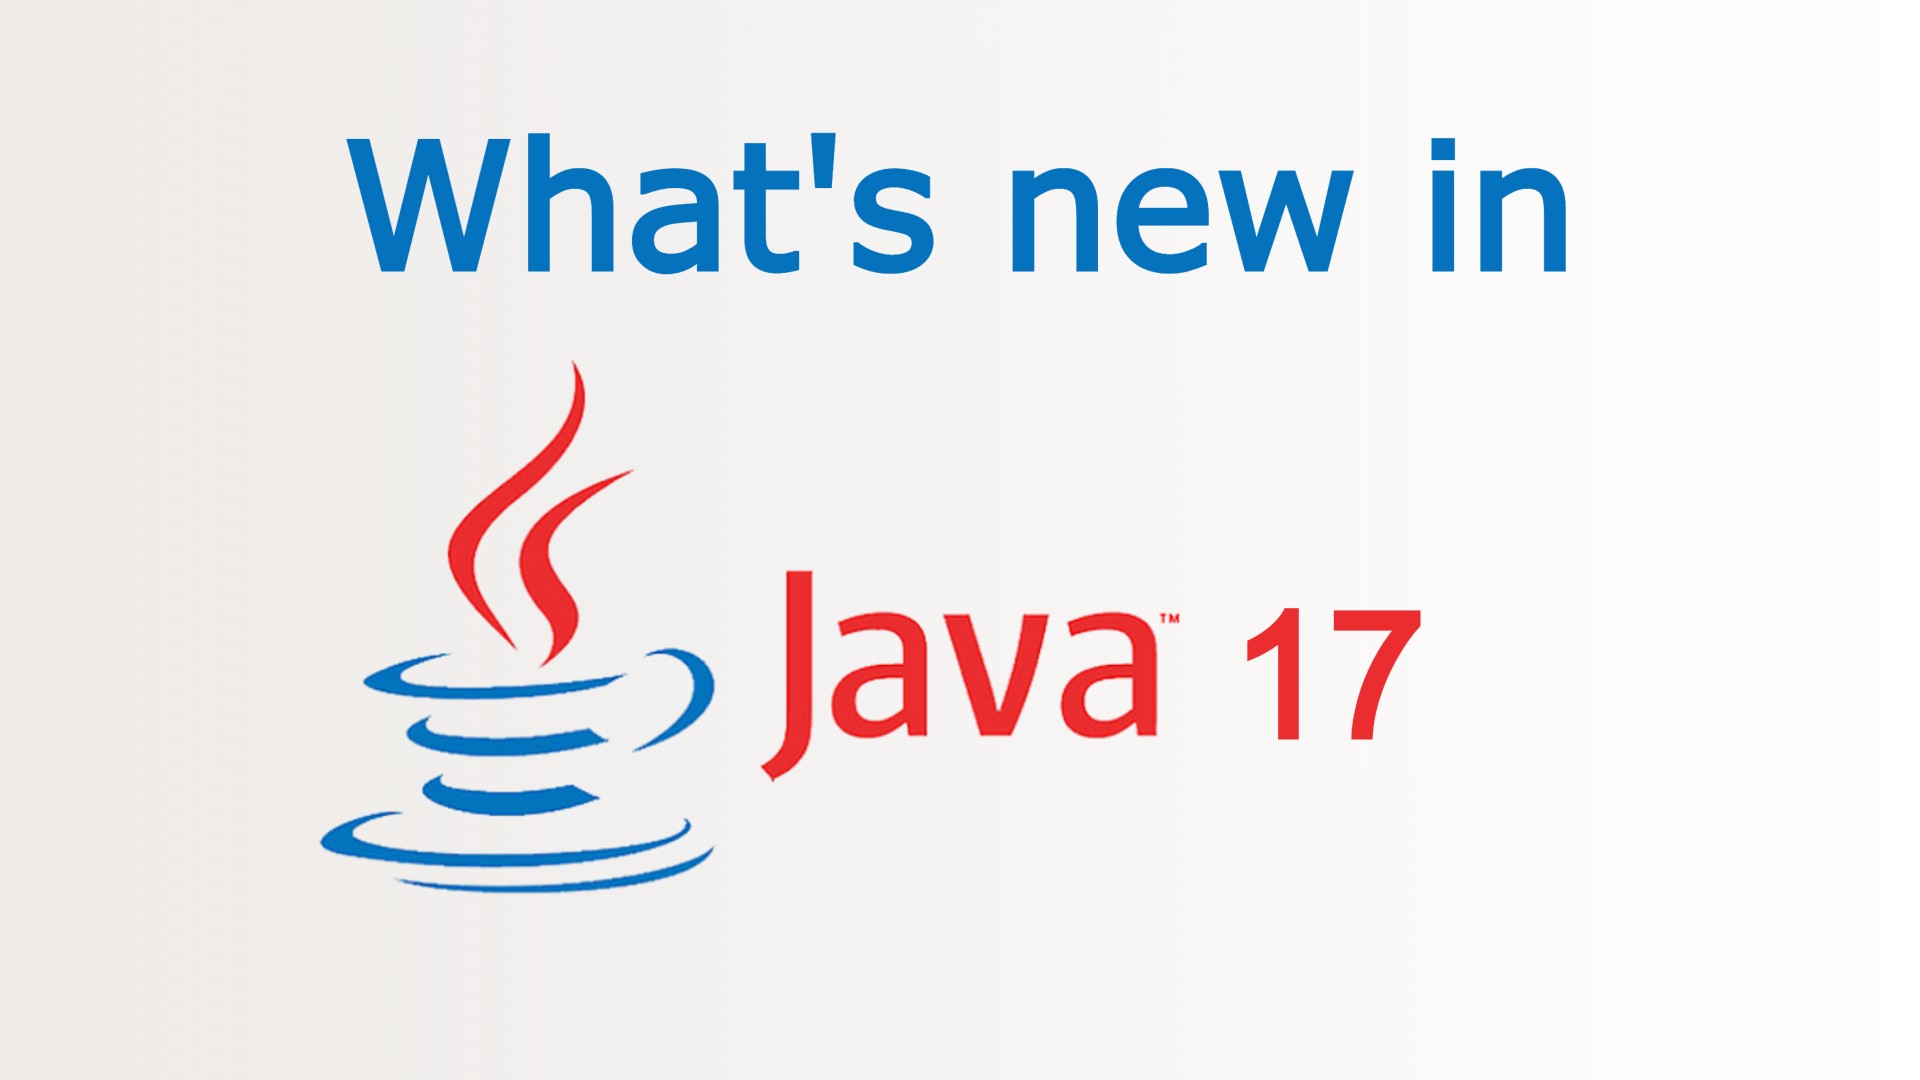 J java. Java логотип. Джава 17. Java разработка. Java картинки.